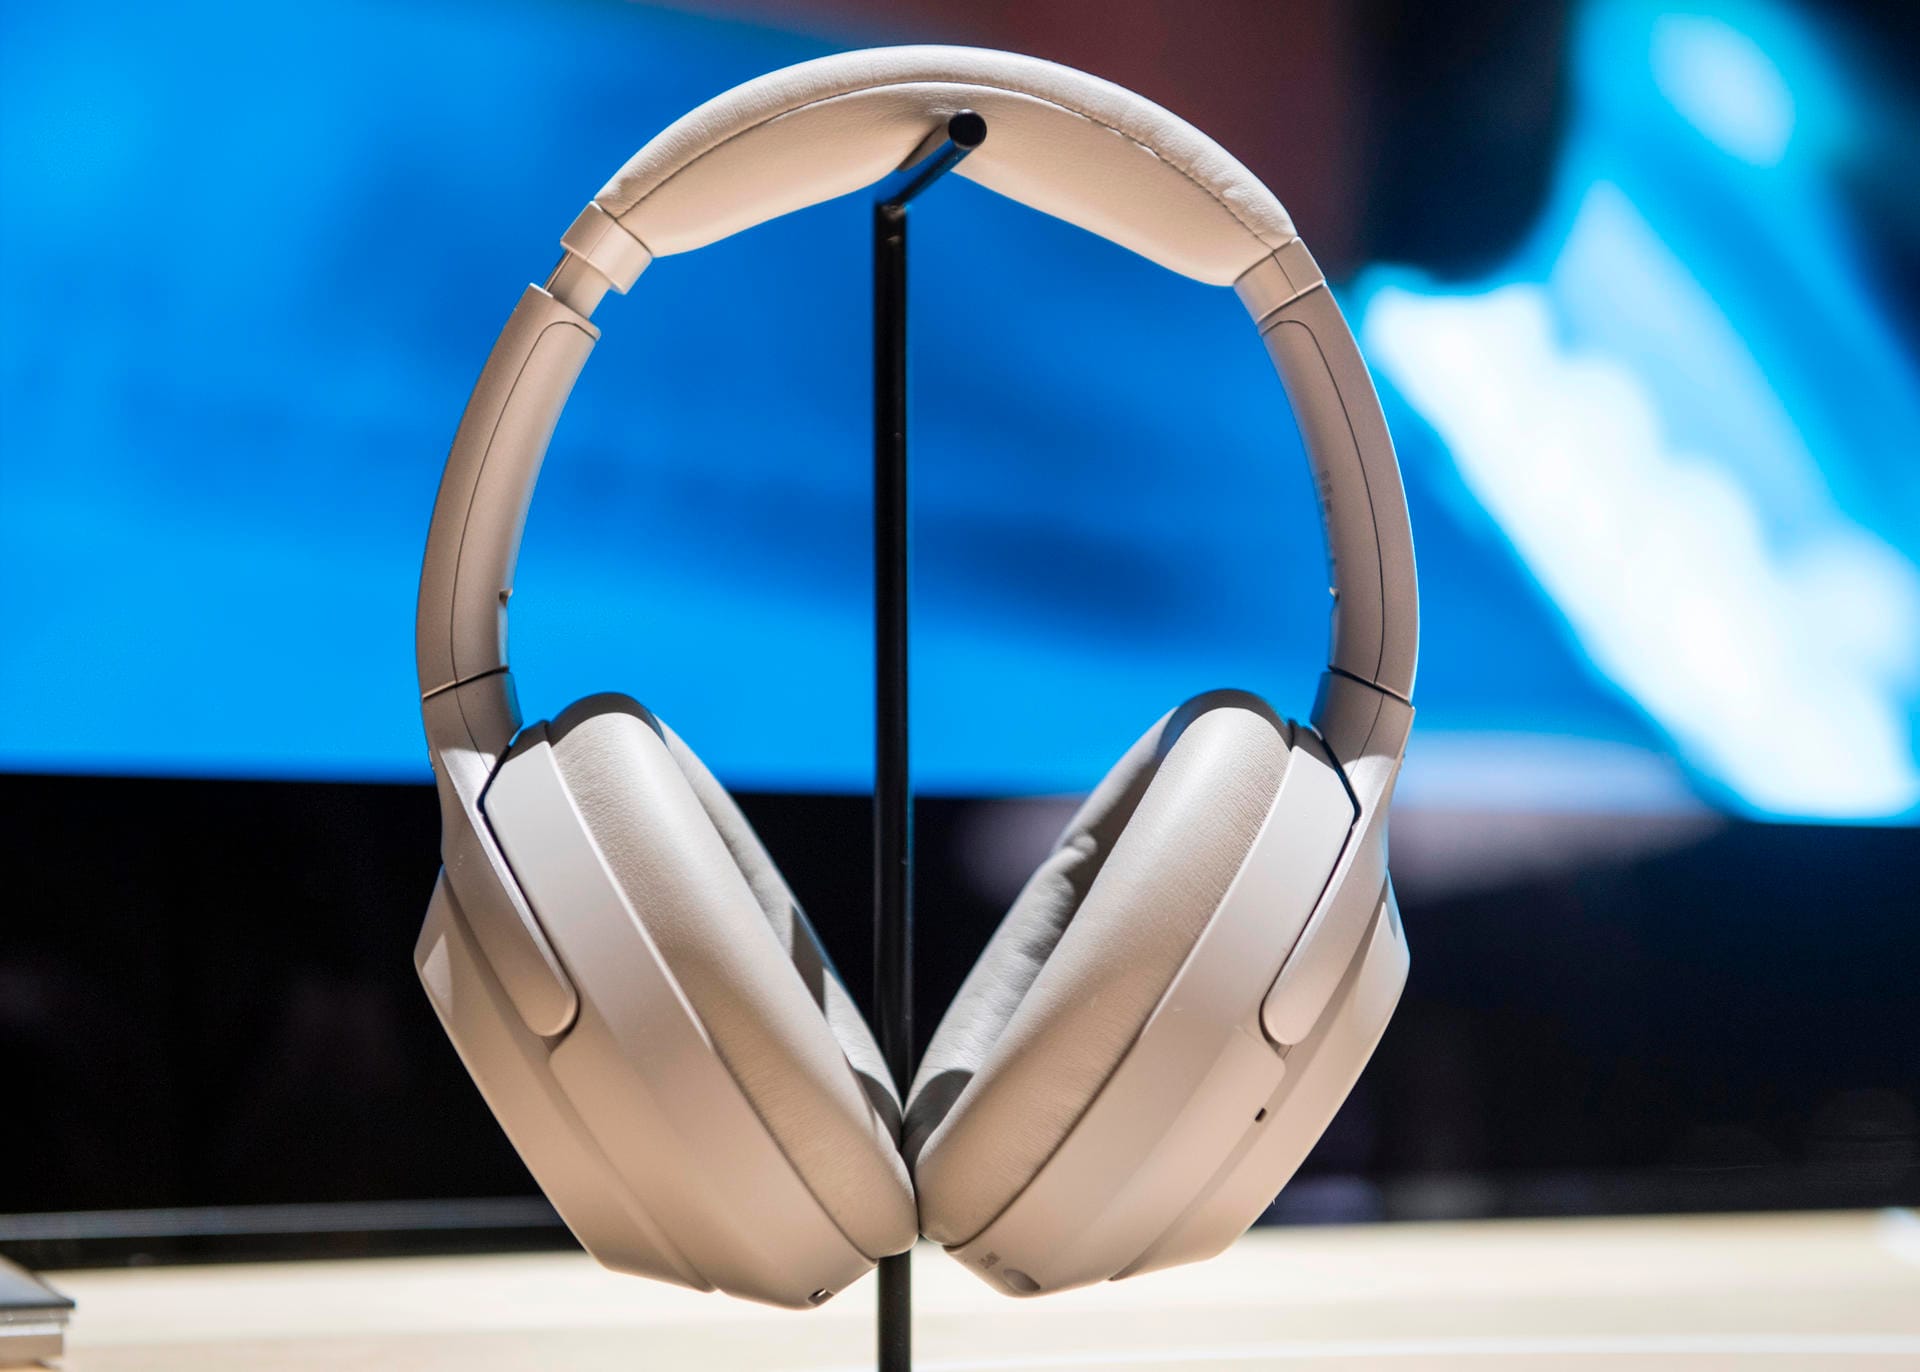 Sonys neuer Kopfhörer WH-1000XM3 (circa 380 Euro) kann Umgebungsgeräusche herausfiltern und verschiedene Geräuschquellen unterscheiden. Der Akku soll bis zu 30 Stunden durchhalten.